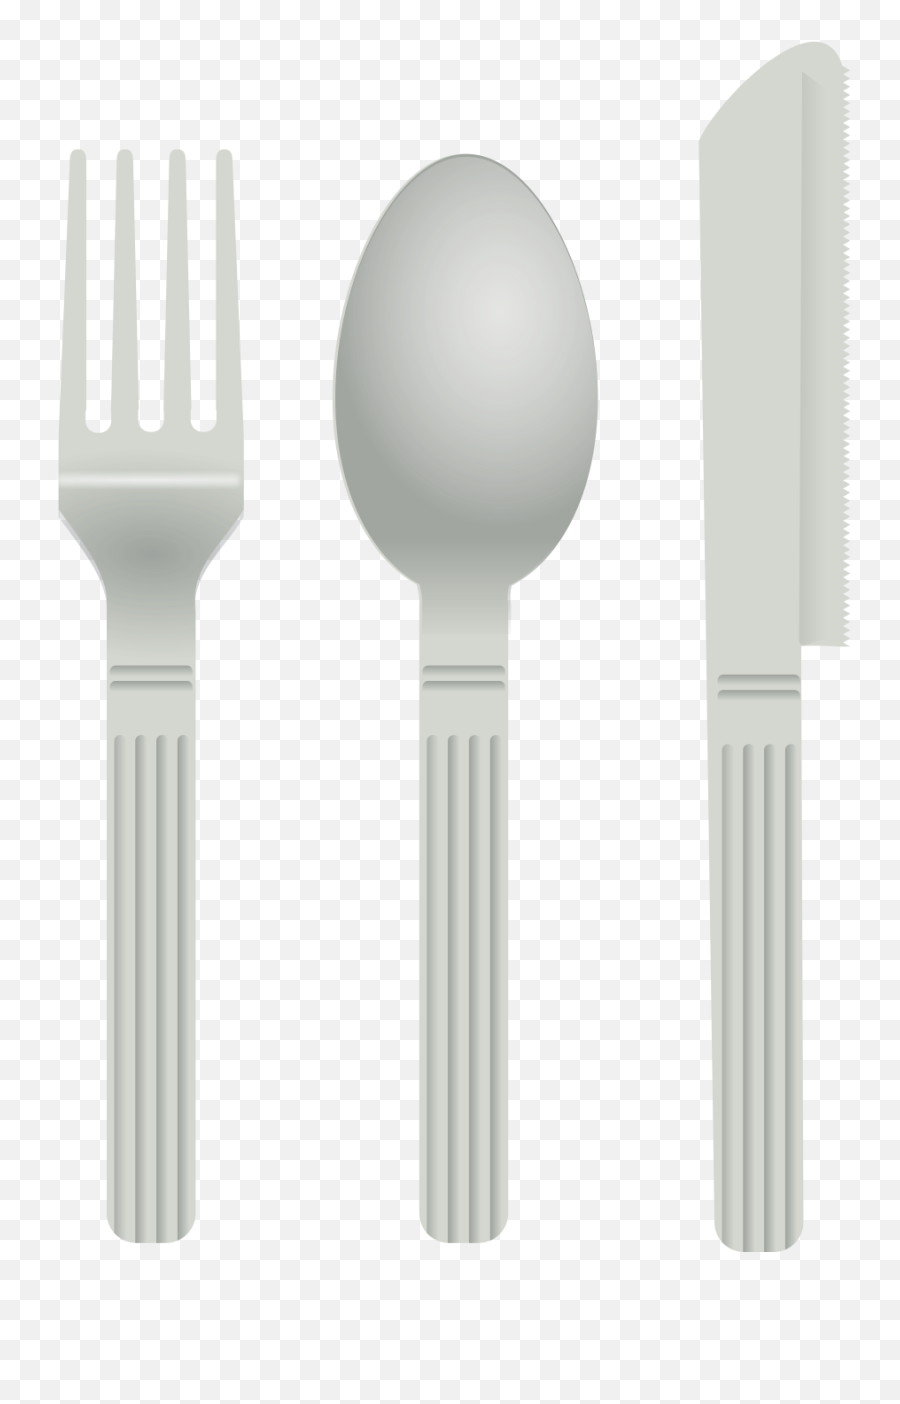 Fork Clipart Plastic Fork Fork Plastic - Spoon Clip Art Emoji,Pig And Knife Emoji